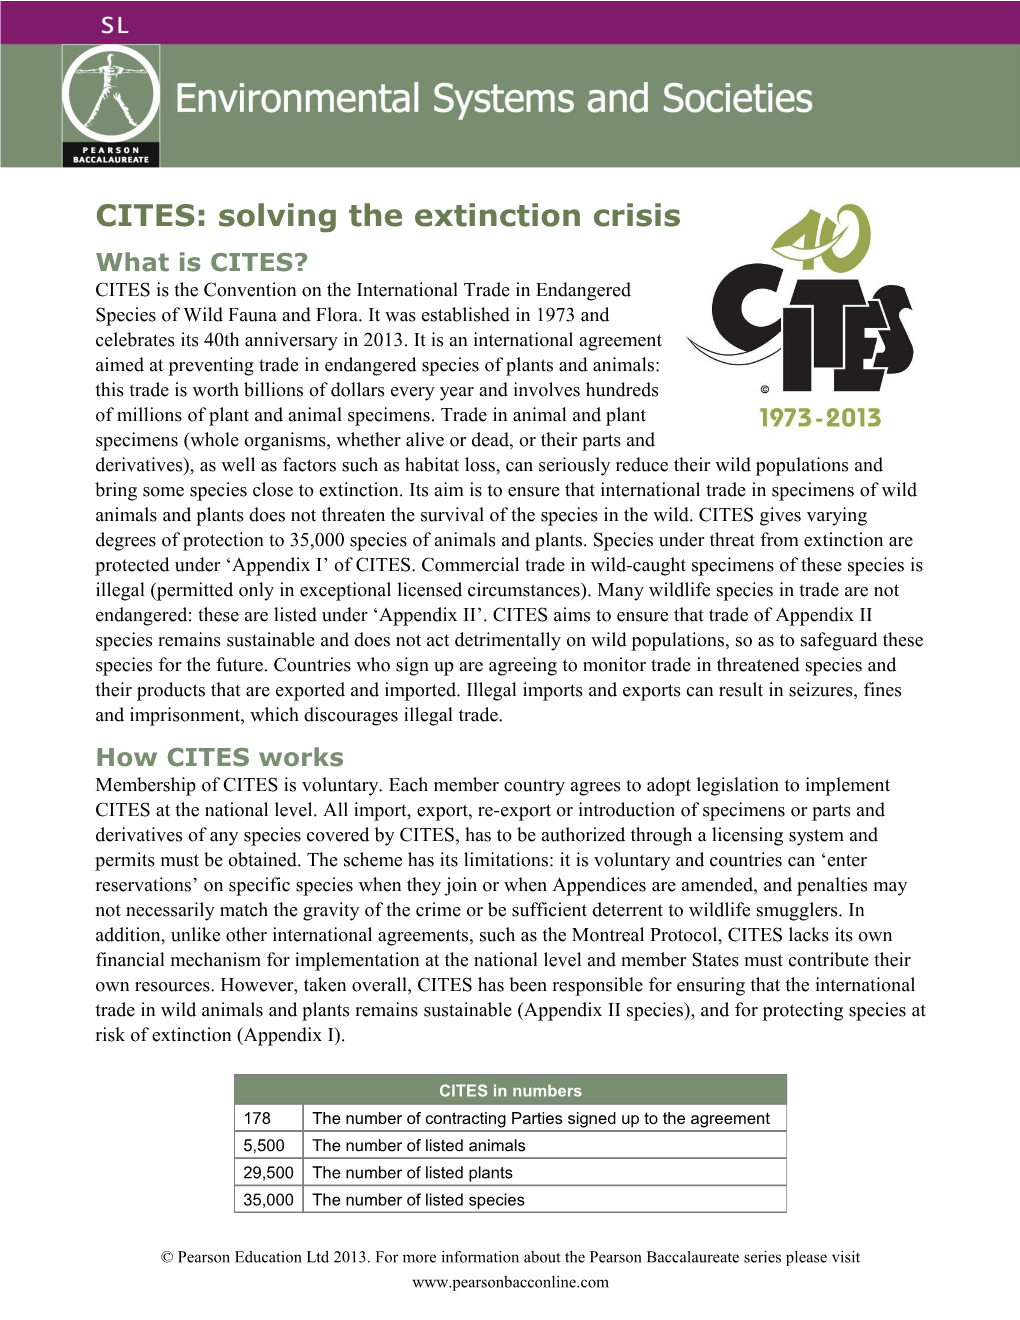 CITES: Solving the Extinction Crisis